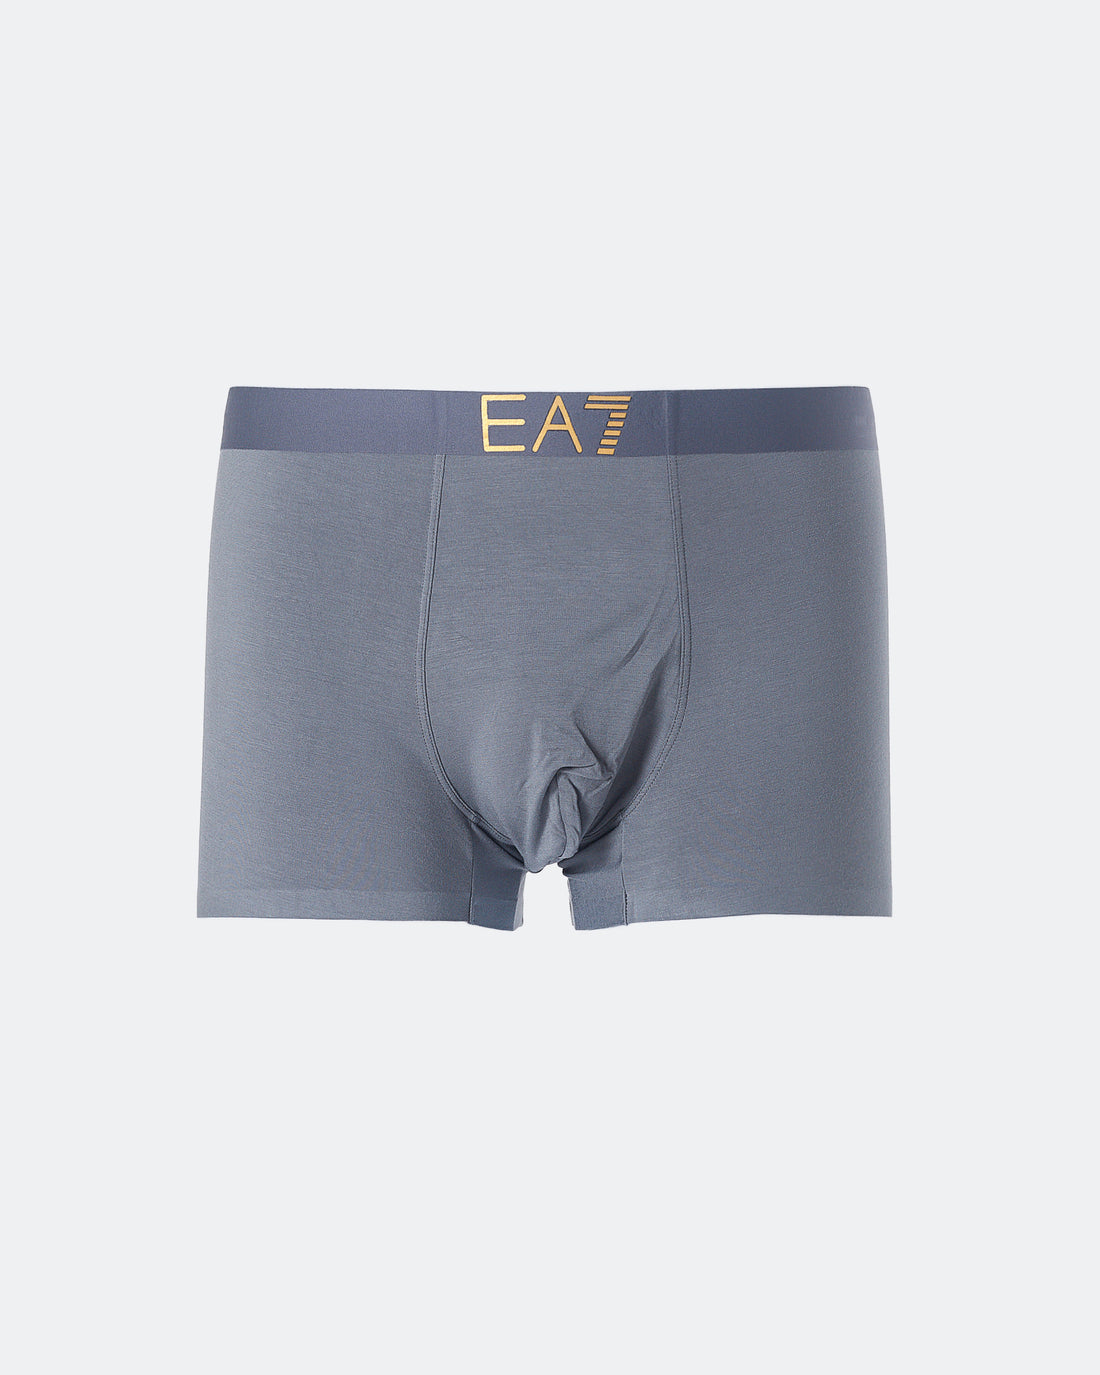 ARM EA7 Logo Printed Men Grey Underwear 7.50